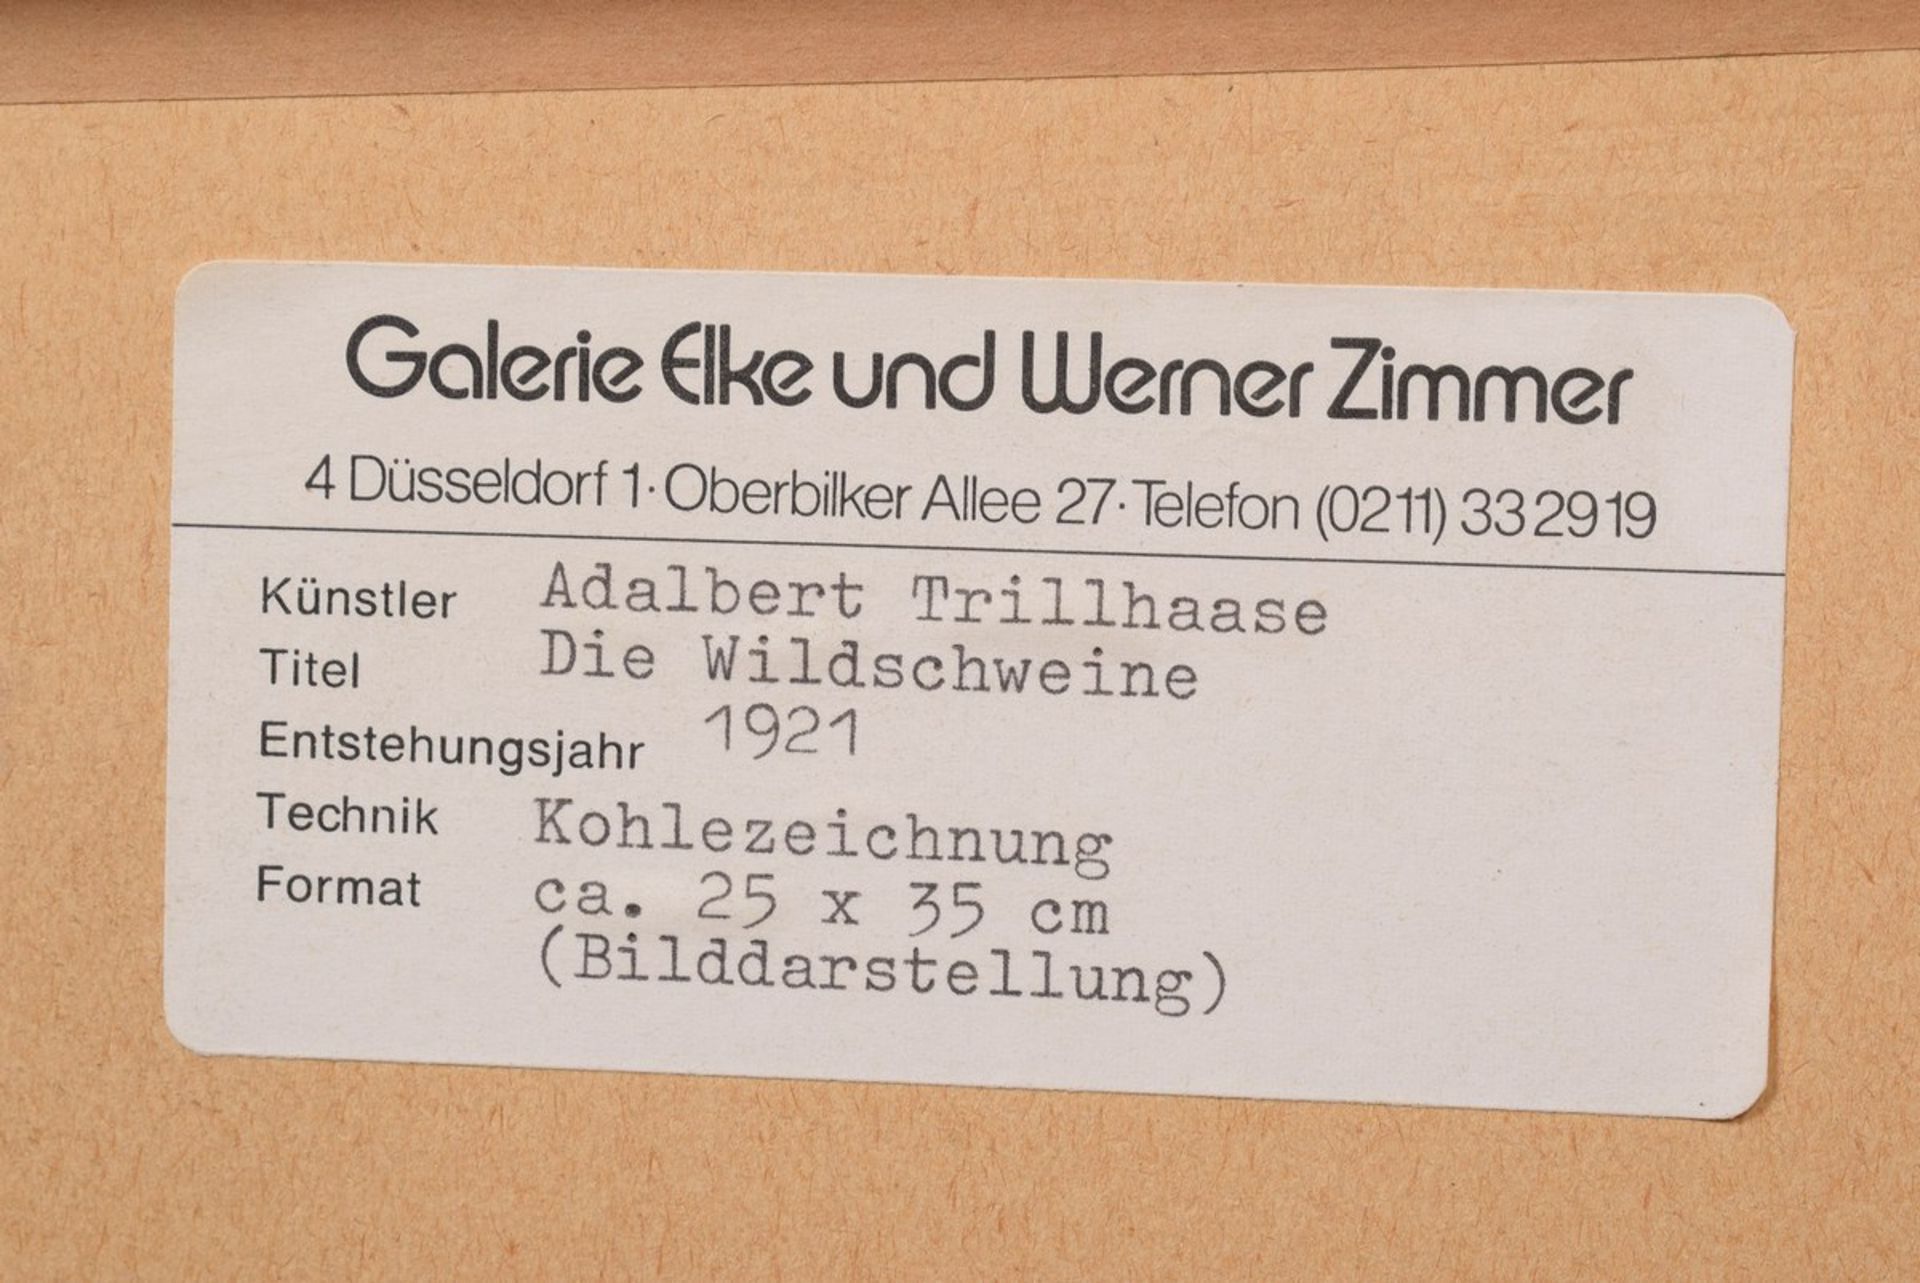 Trillhaase, Adalbert (1858-1936) "Die Wildschweine" 1921, Kohlezeichnung, u.r. sign./dat., verso - Bild 4 aus 4